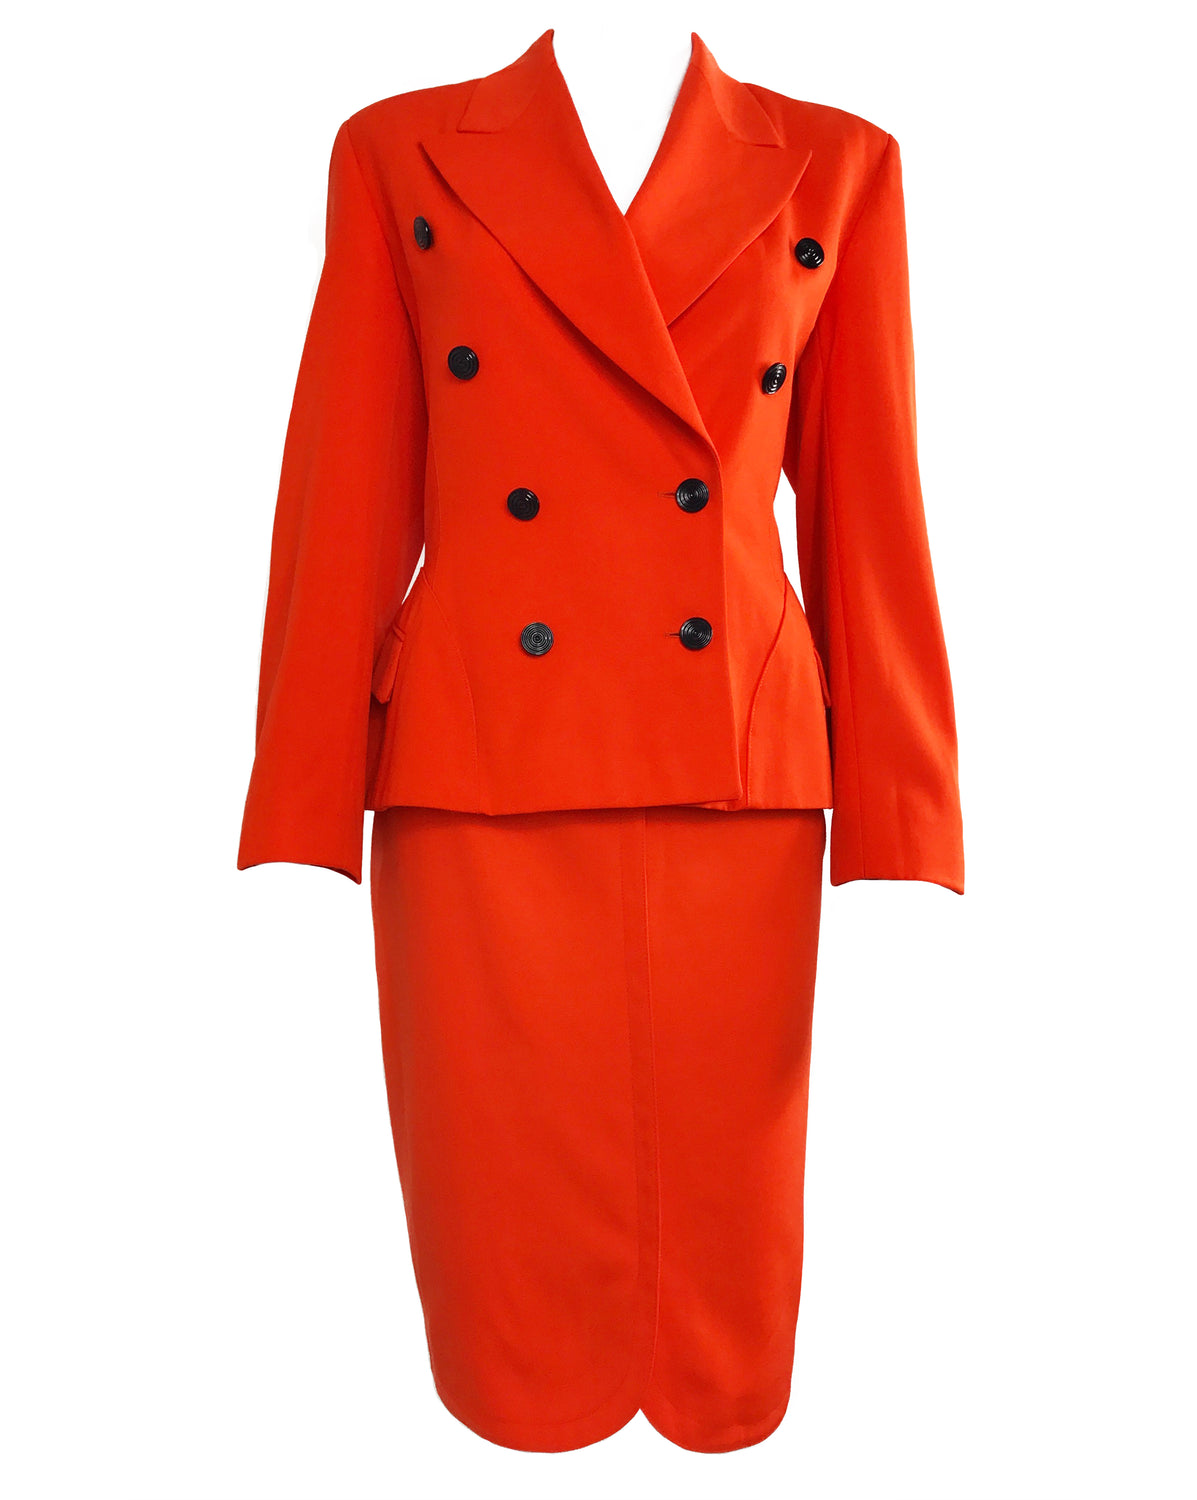 FRUIT Vintage Escada Orange two Piece Suit 1980s Margaretha Ley